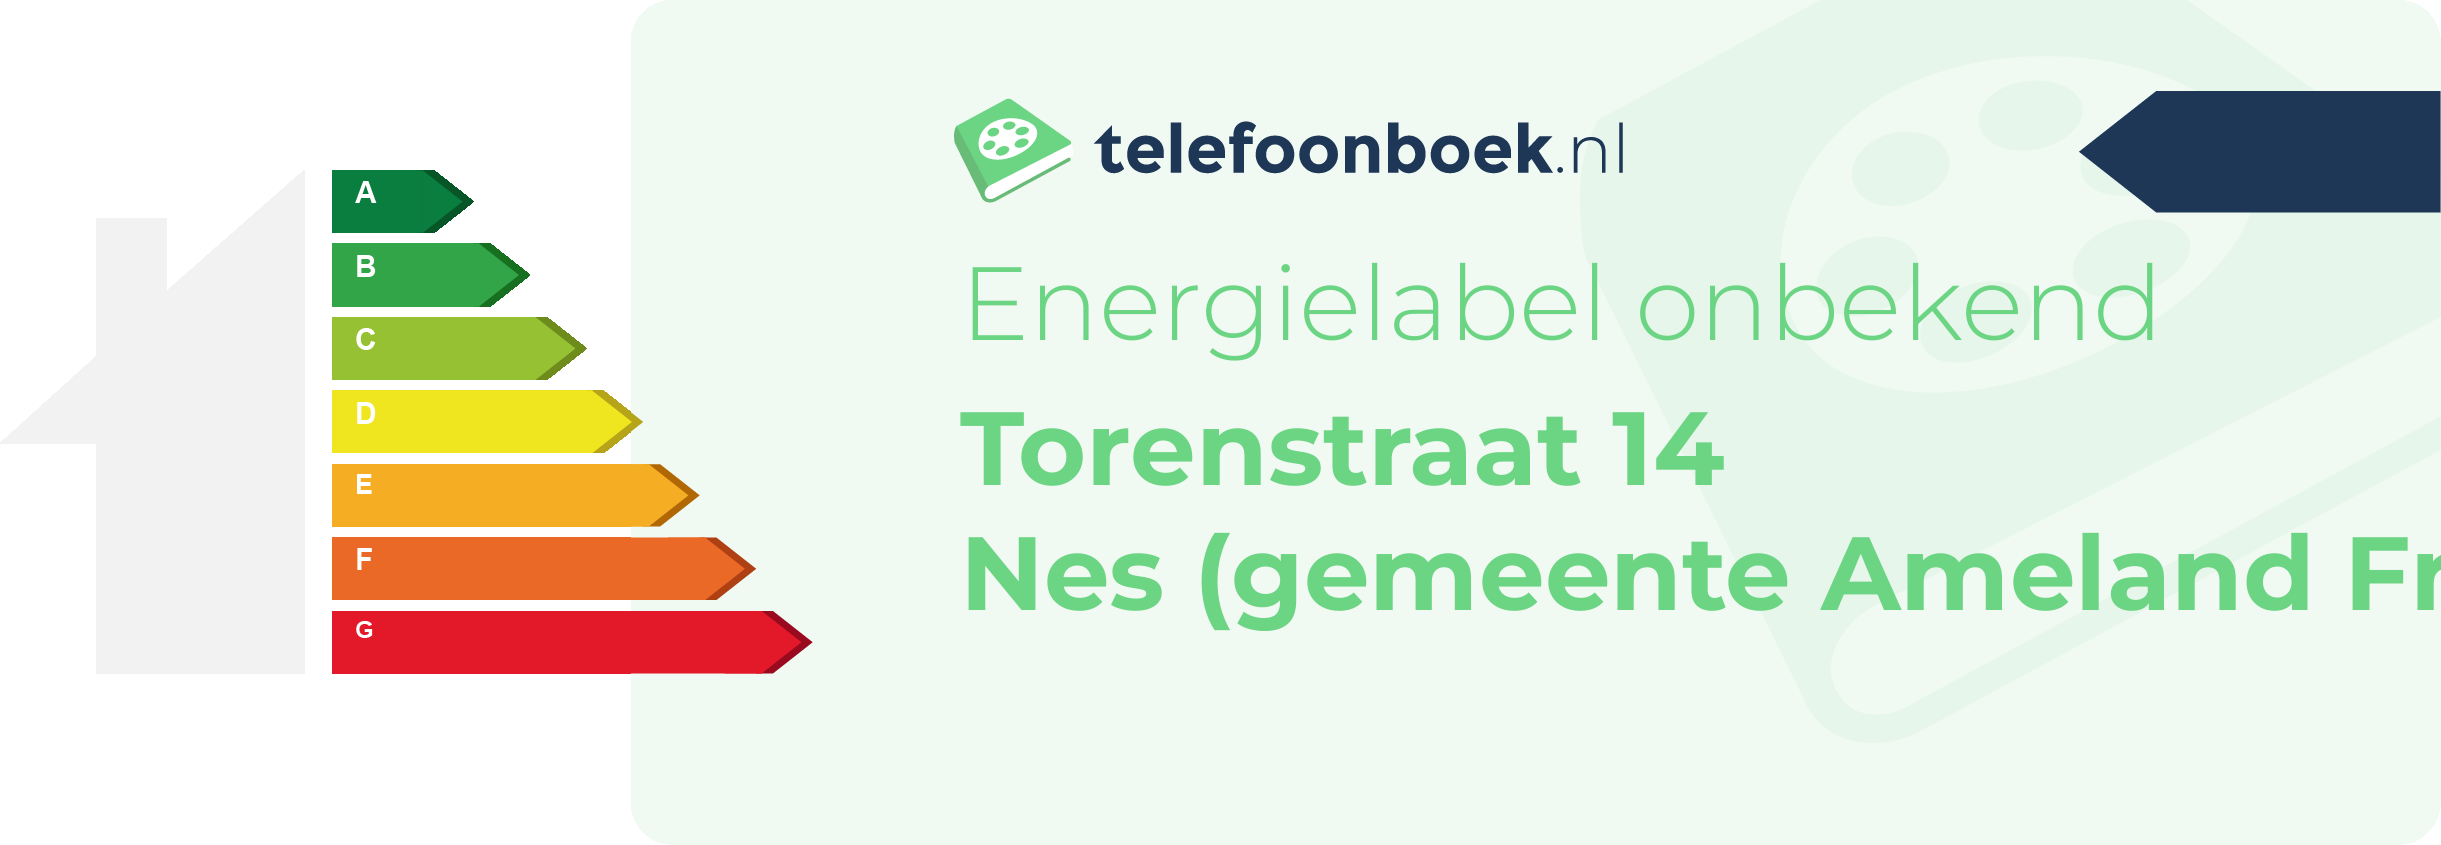 Energielabel Torenstraat 14 Nes (gemeente Ameland Friesland)